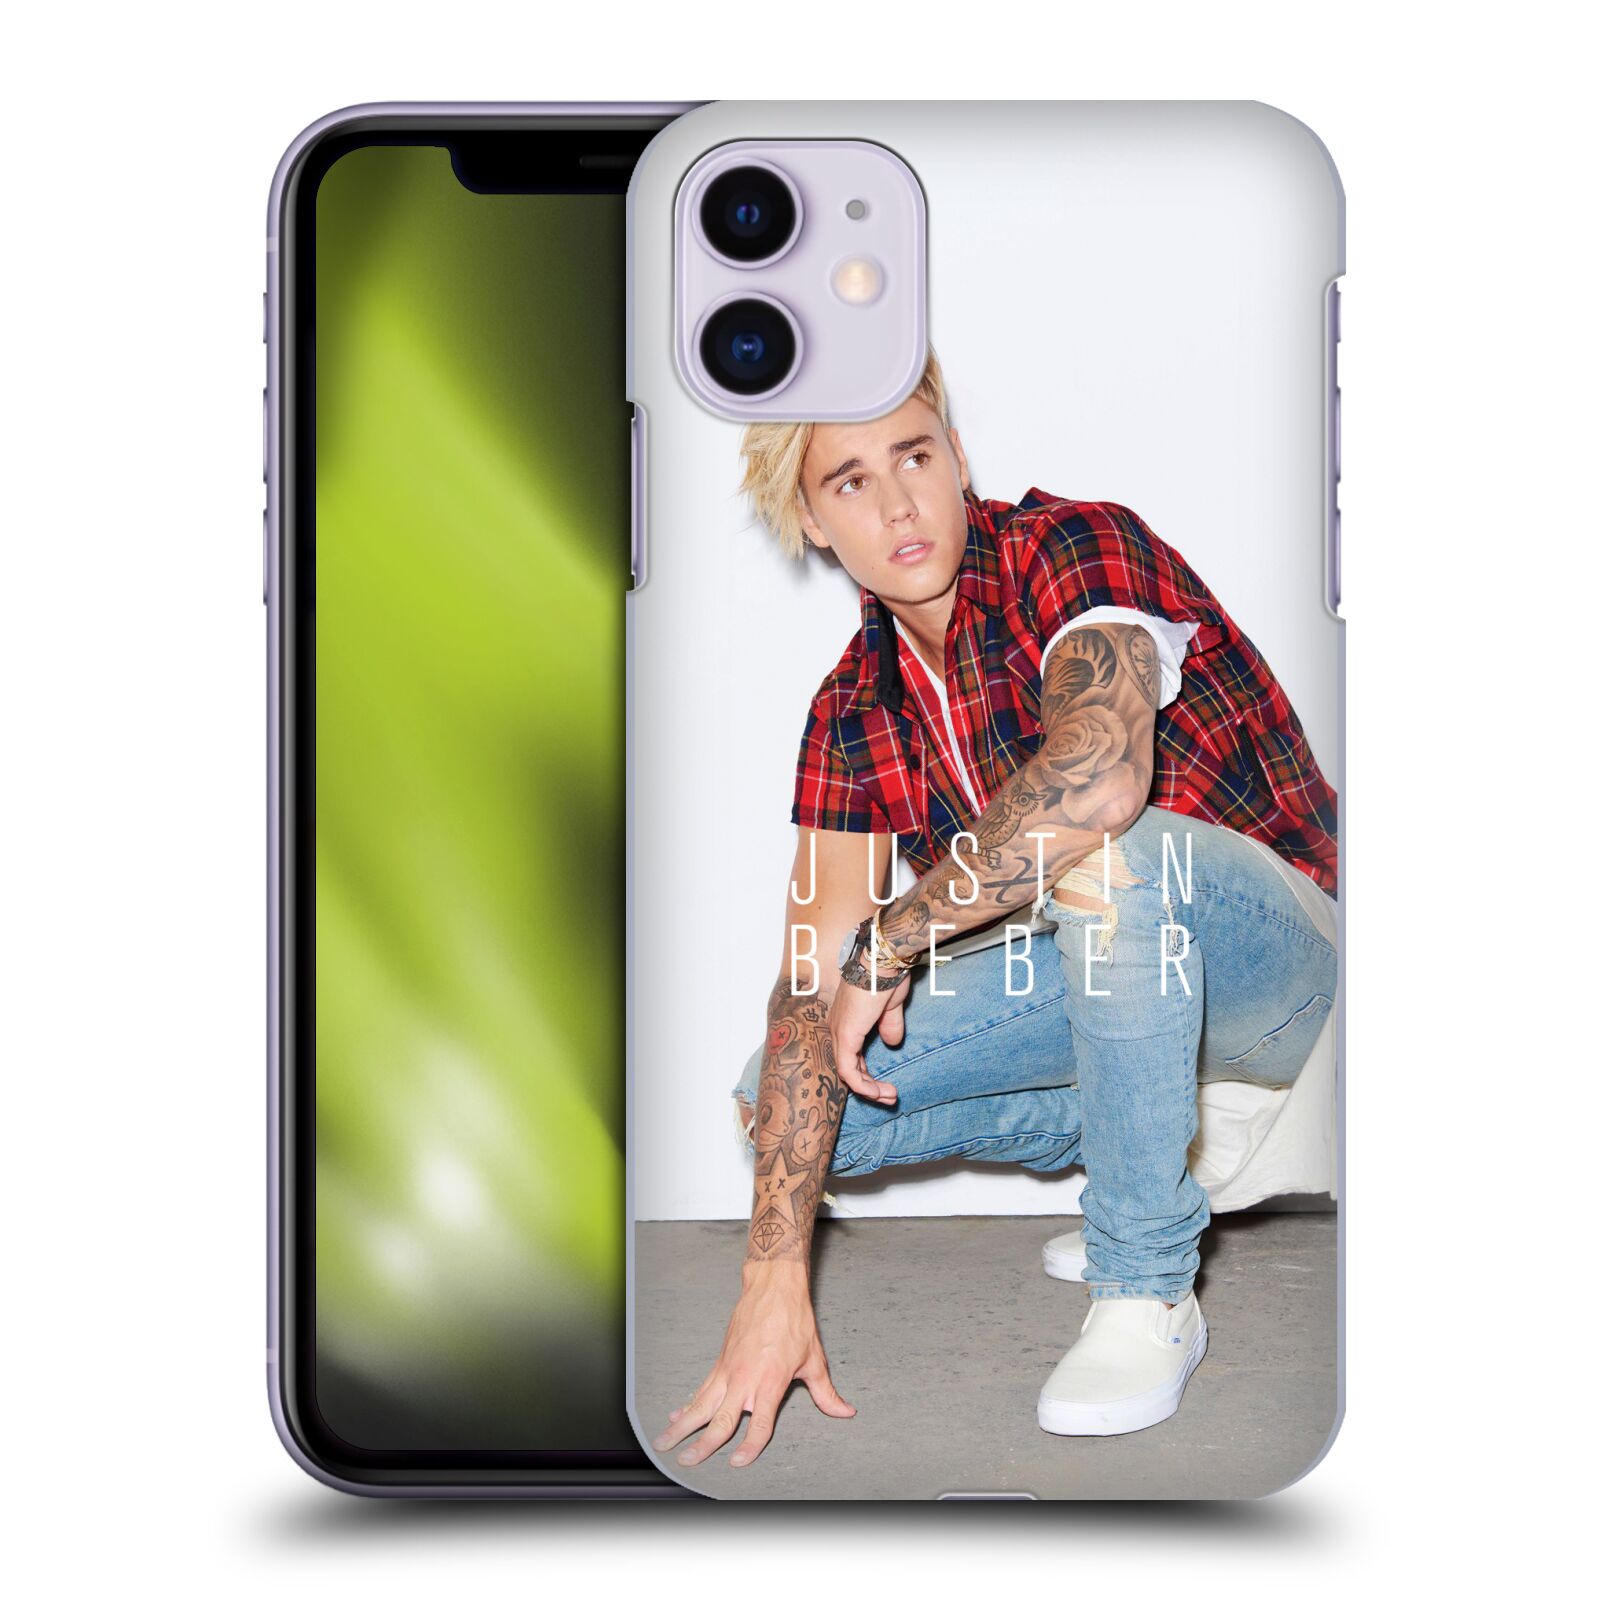 Pouzdro na mobil Apple Iphone 11 - HEAD CASE - Justin Bieber foto Purpose tour kalendář